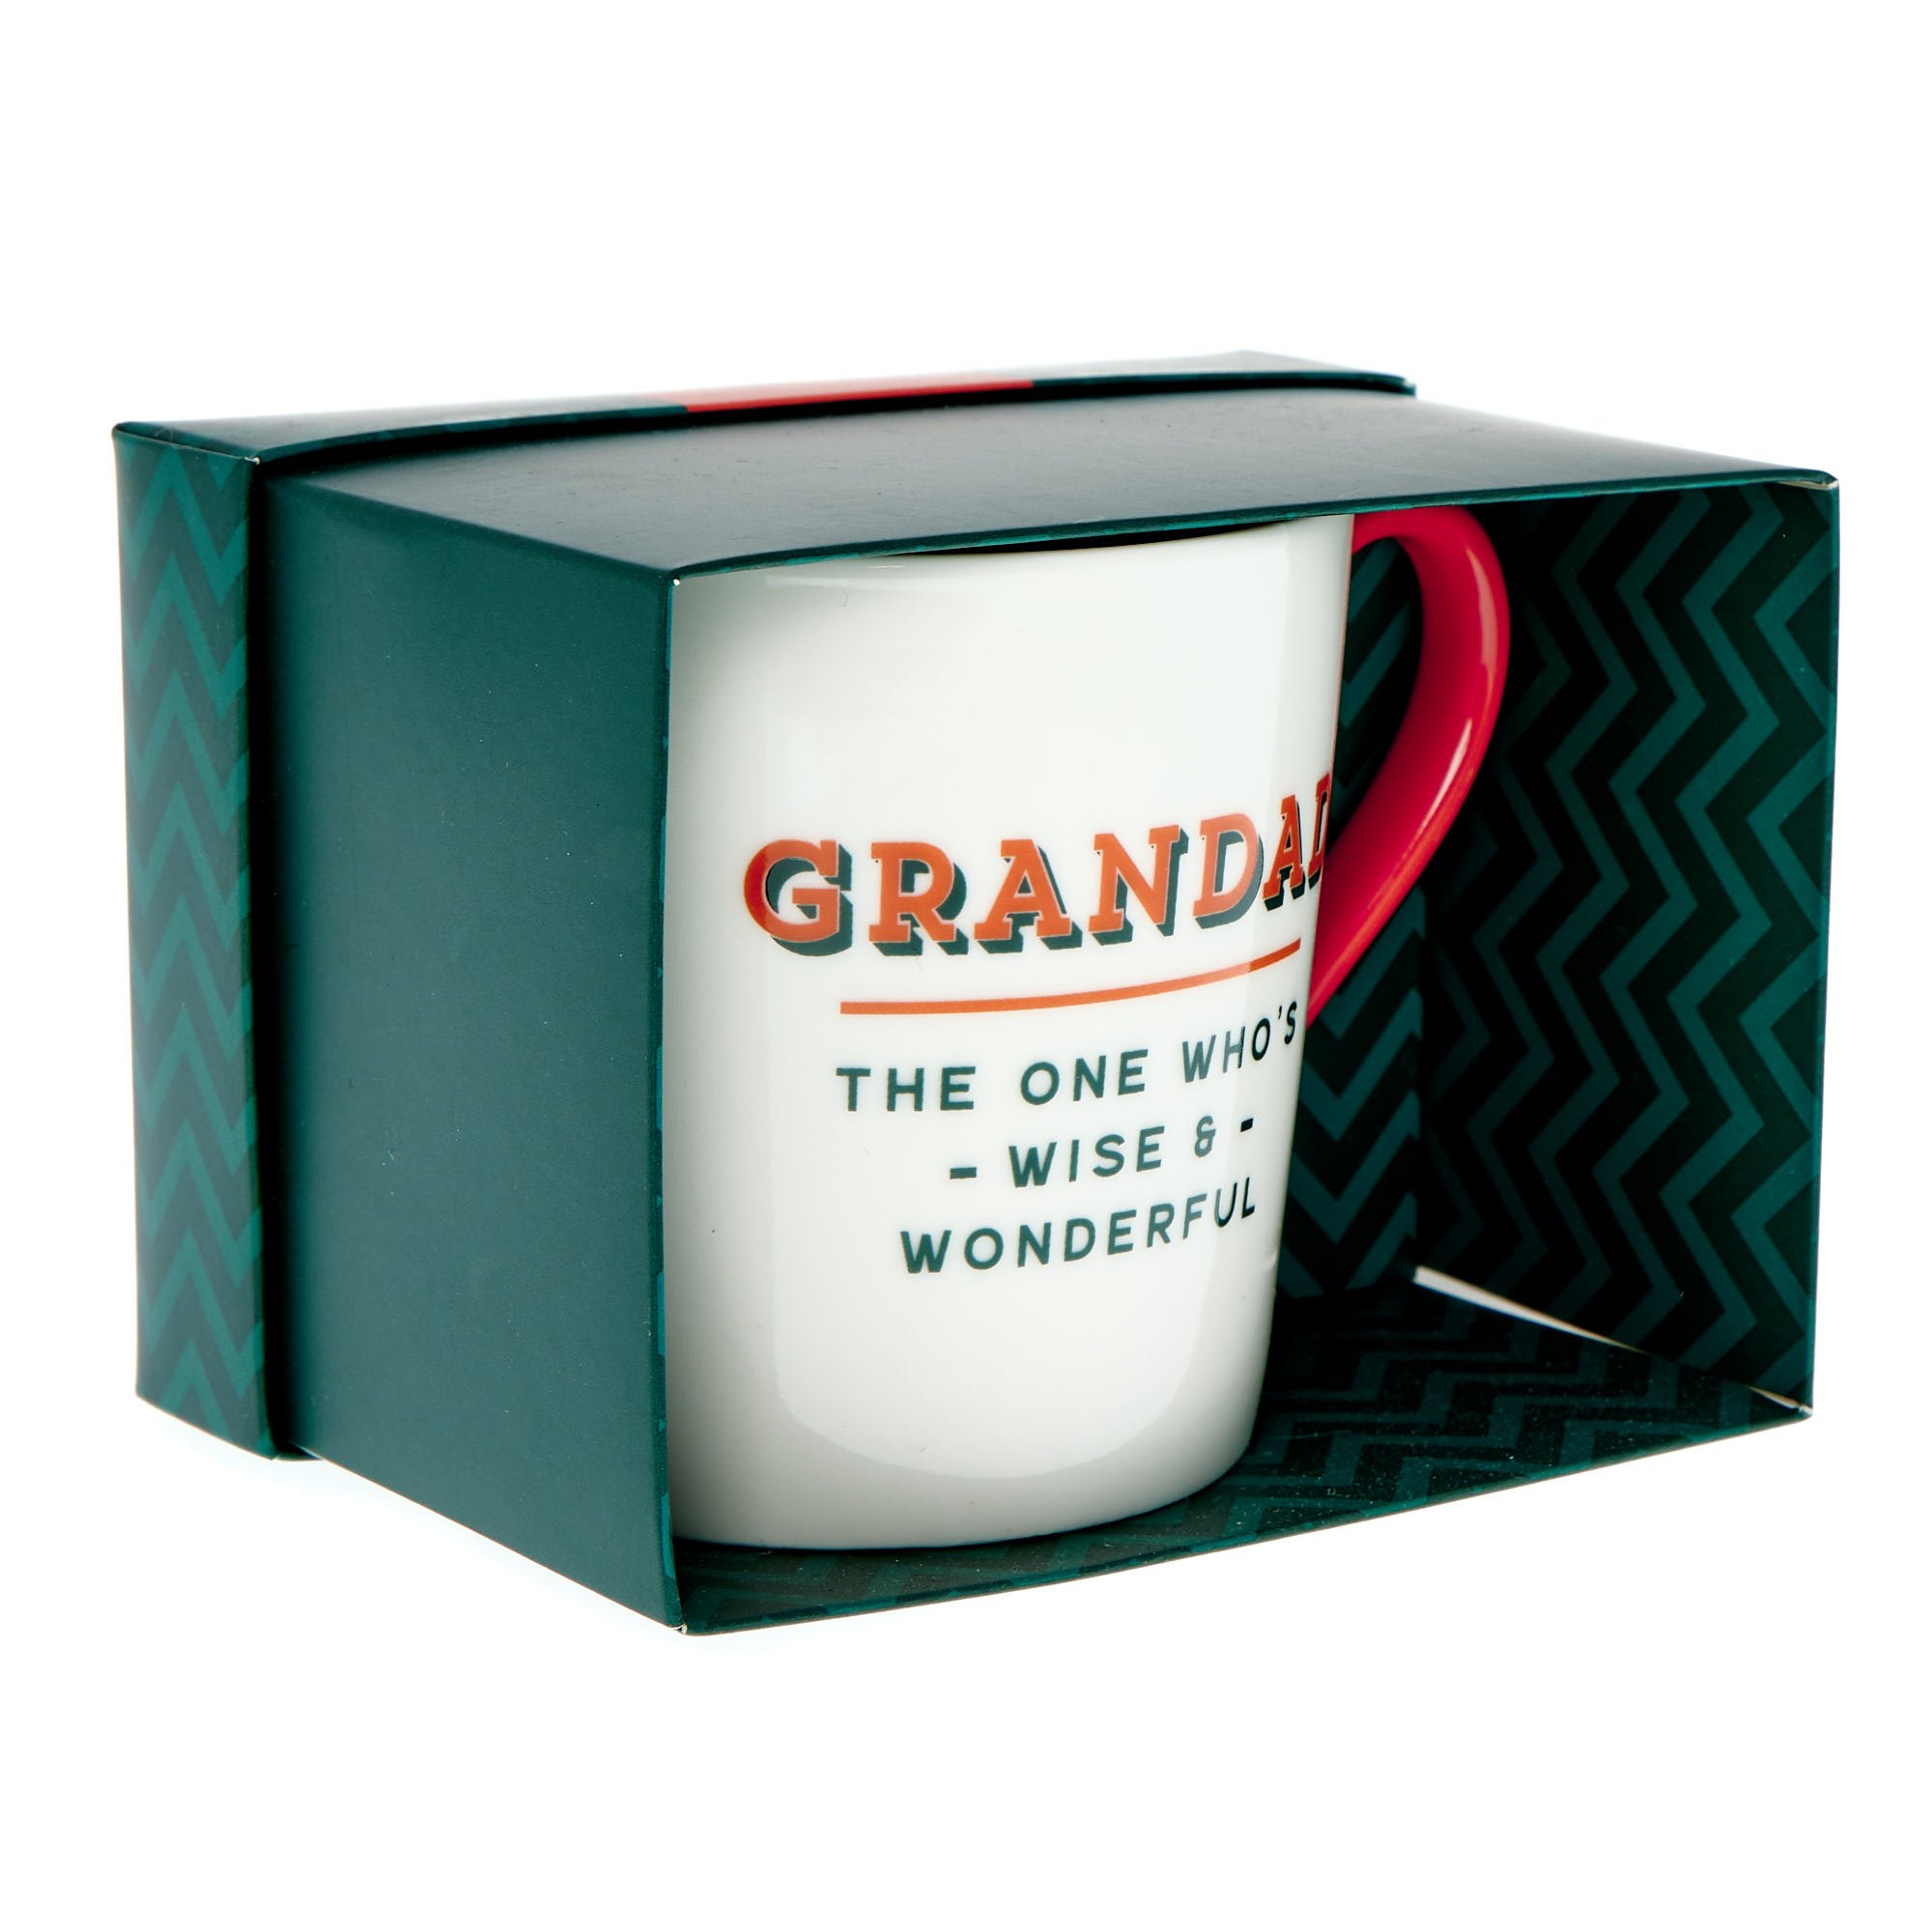 Grandad Wise & Wonderful Mug